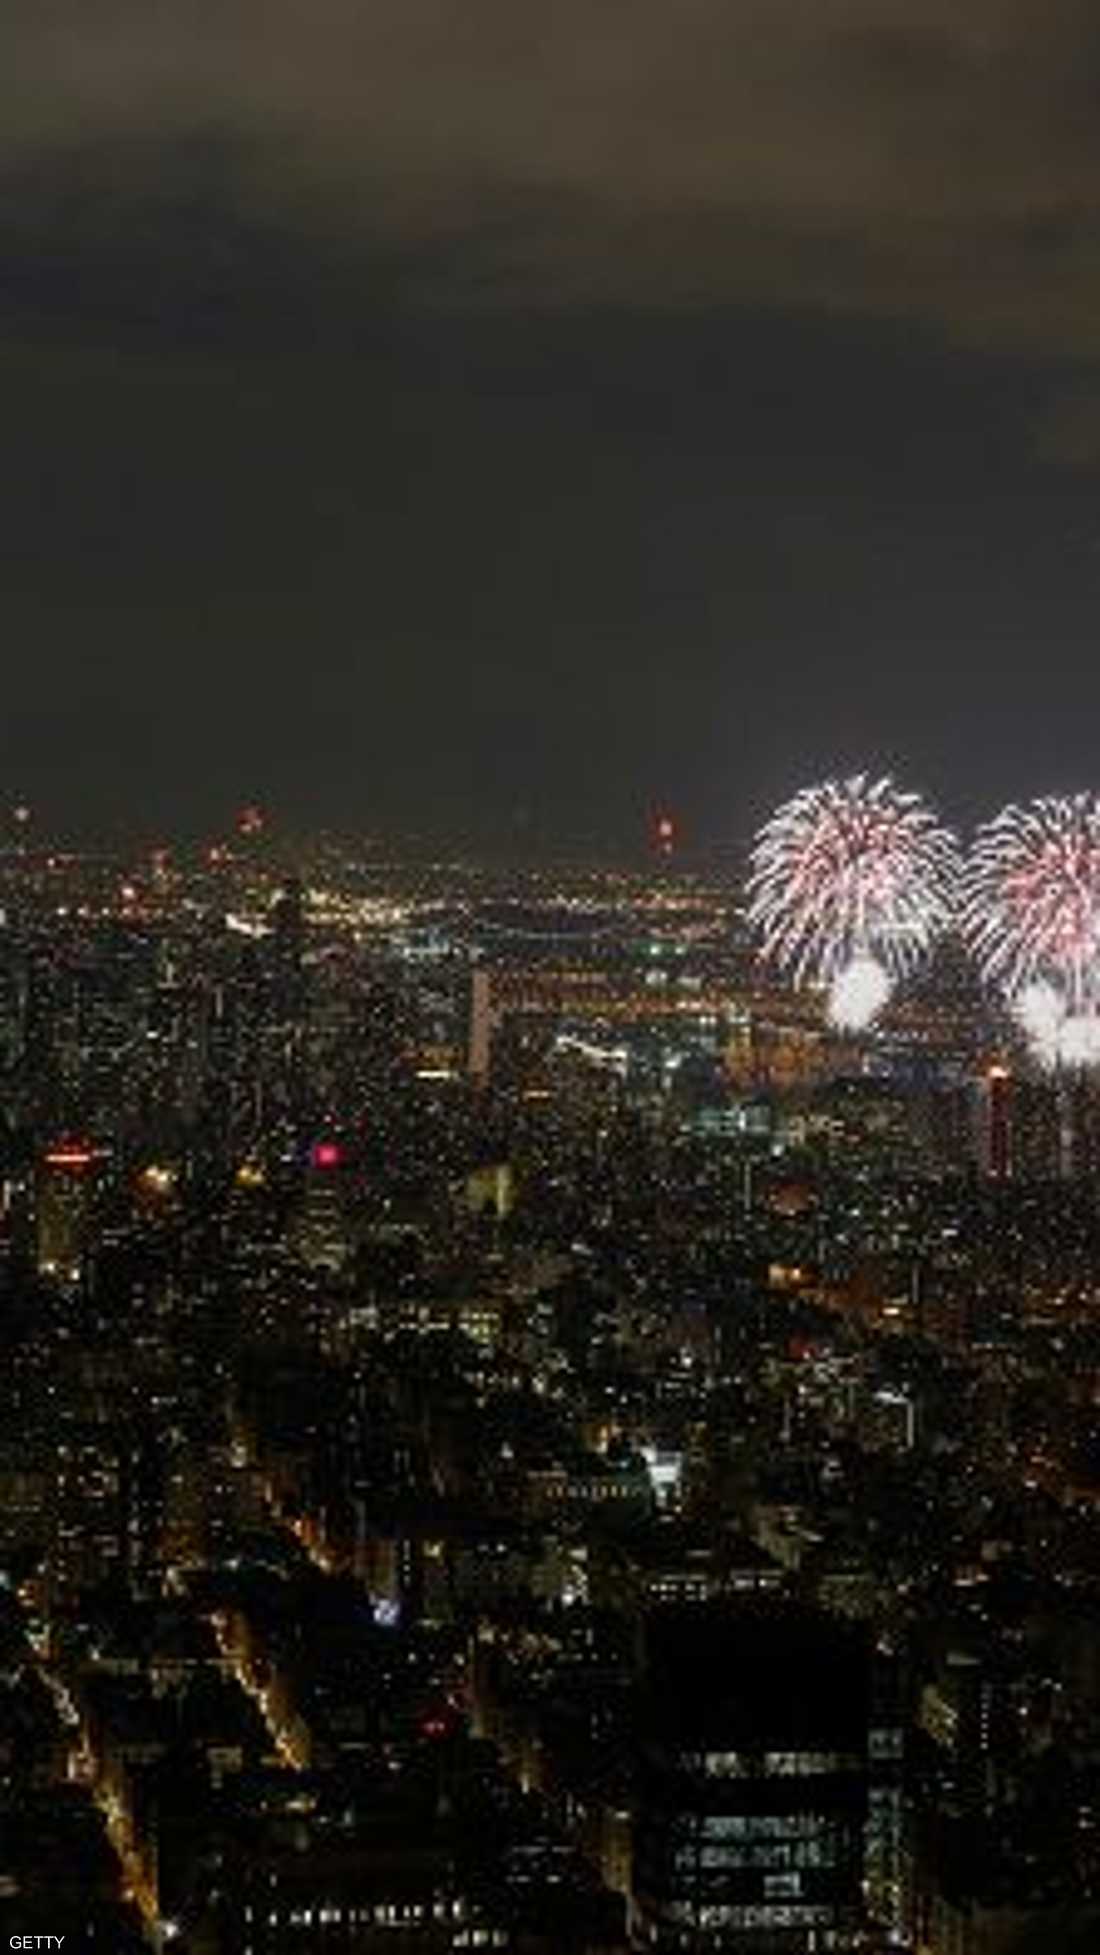 ألعاب نارية في سماء نيويورك احتفالا بذكرى عيد الاستقلال